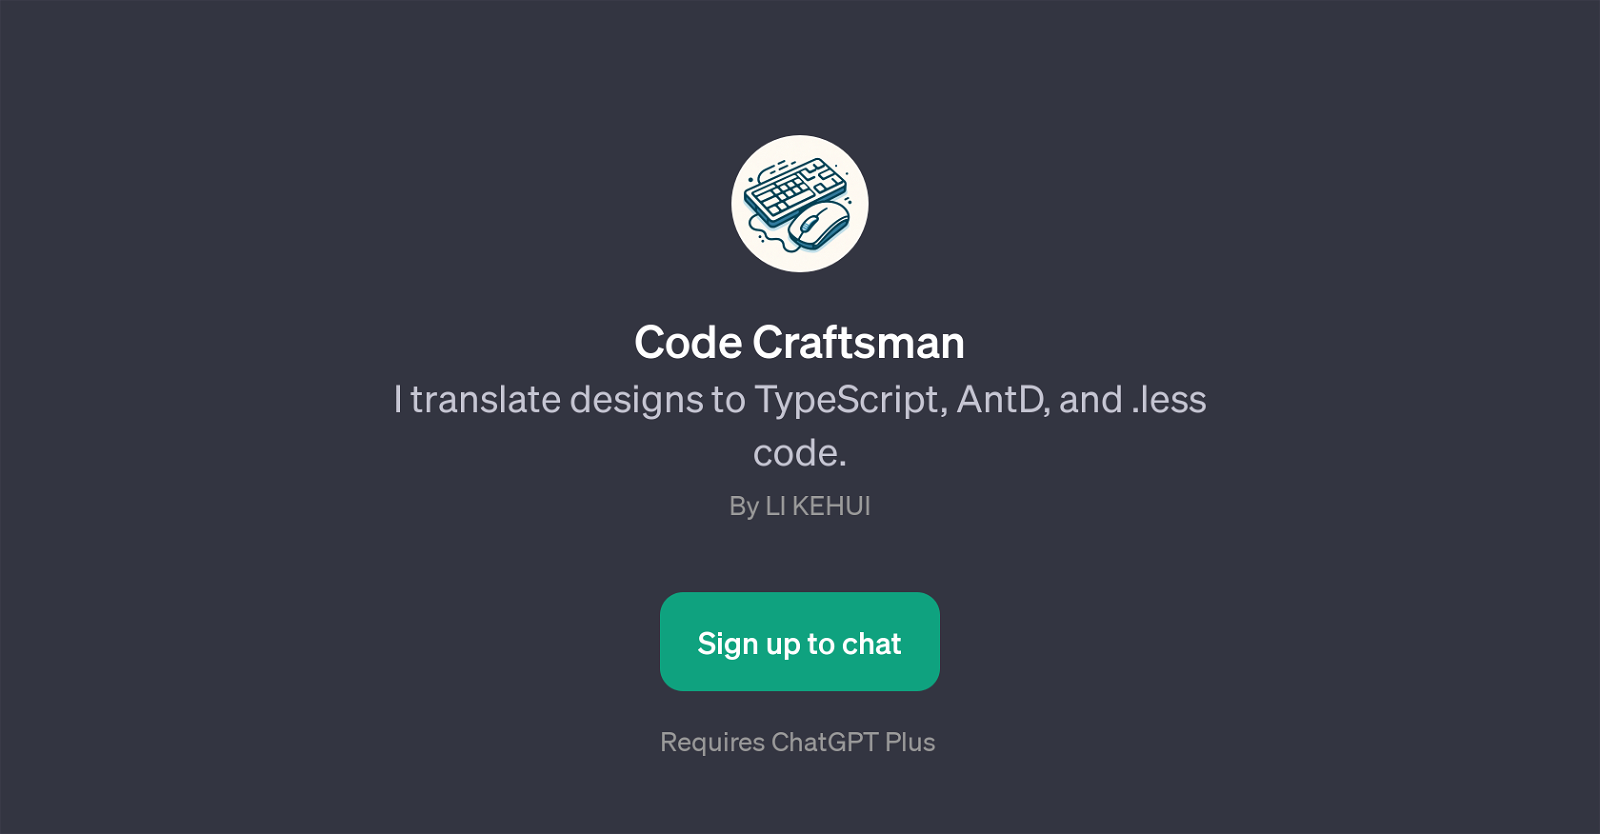 Code Craftsman website